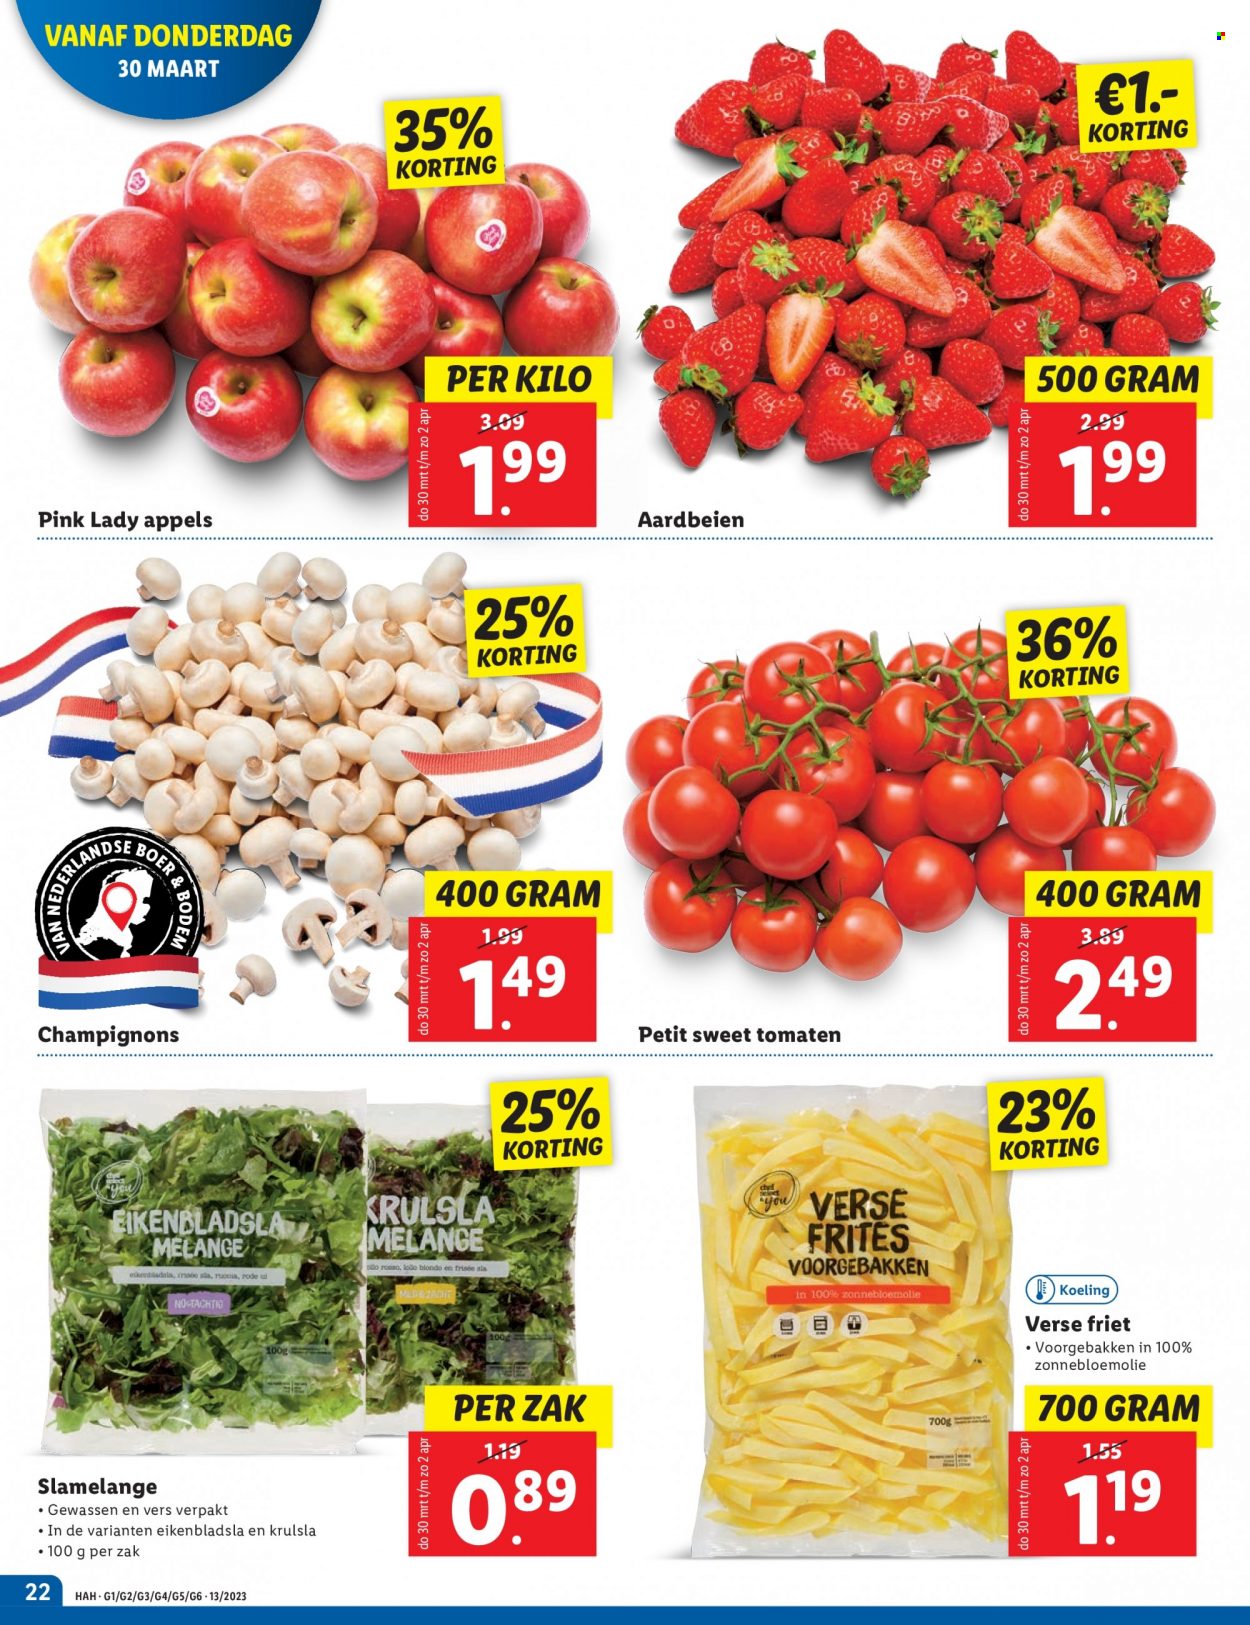 thumbnail - Lidl-aanbieding - 27-3-2023 - 2-4-2023 -  producten in de aanbieding - champignons, slamelange, tomaten, aardbeien, appels, frites, zonnebloemolie. Pagina 22.